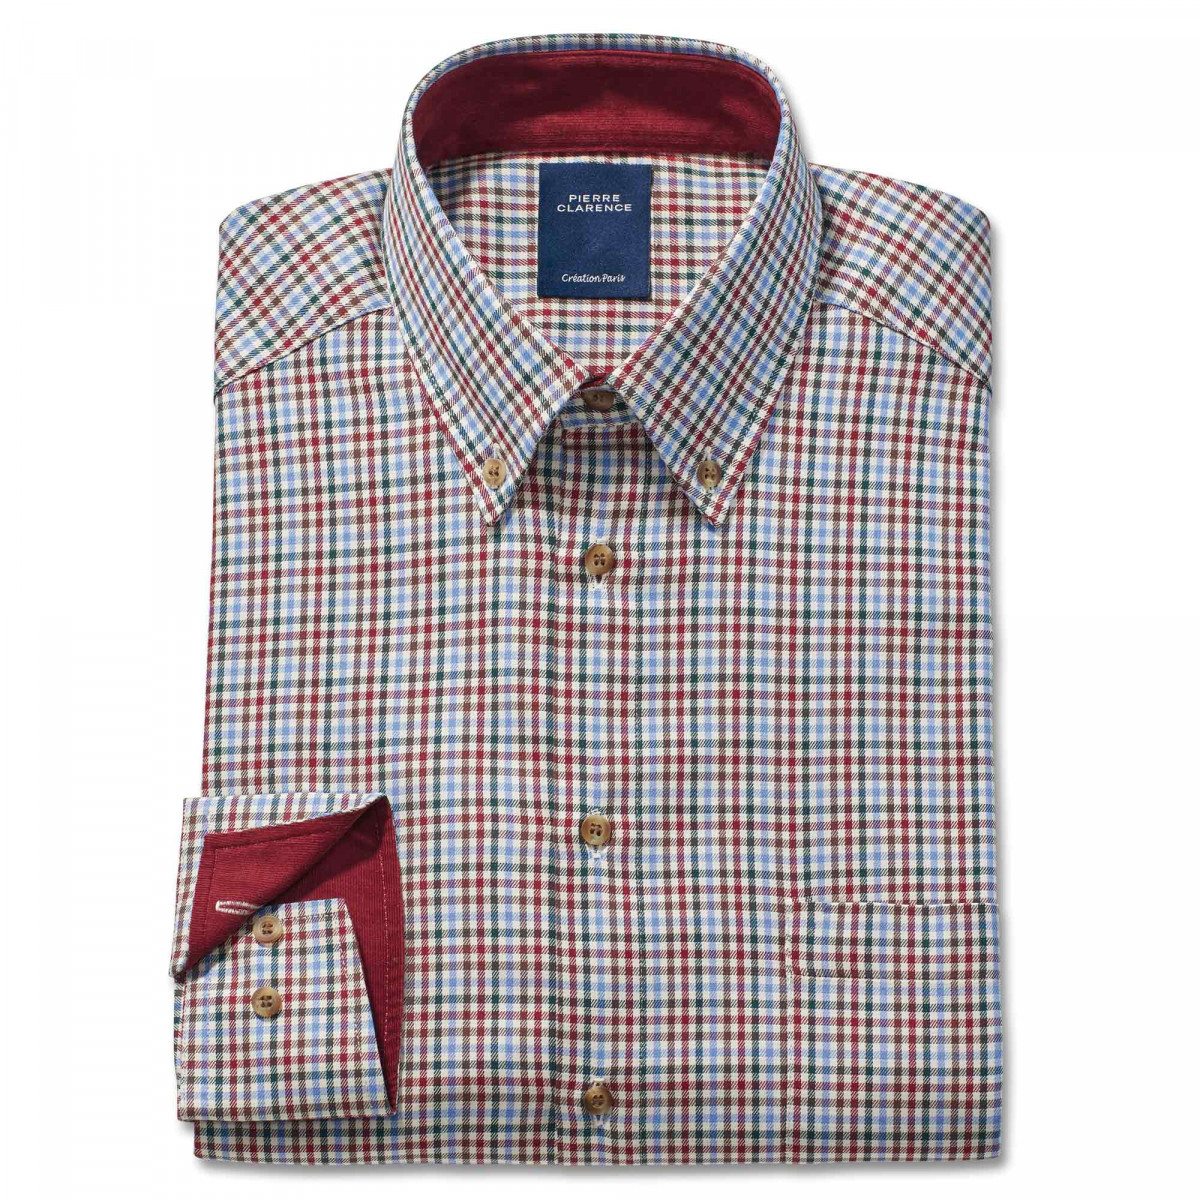 Chemise droite coton carreaux col contrasté bordeaux 47/48 Multicolore